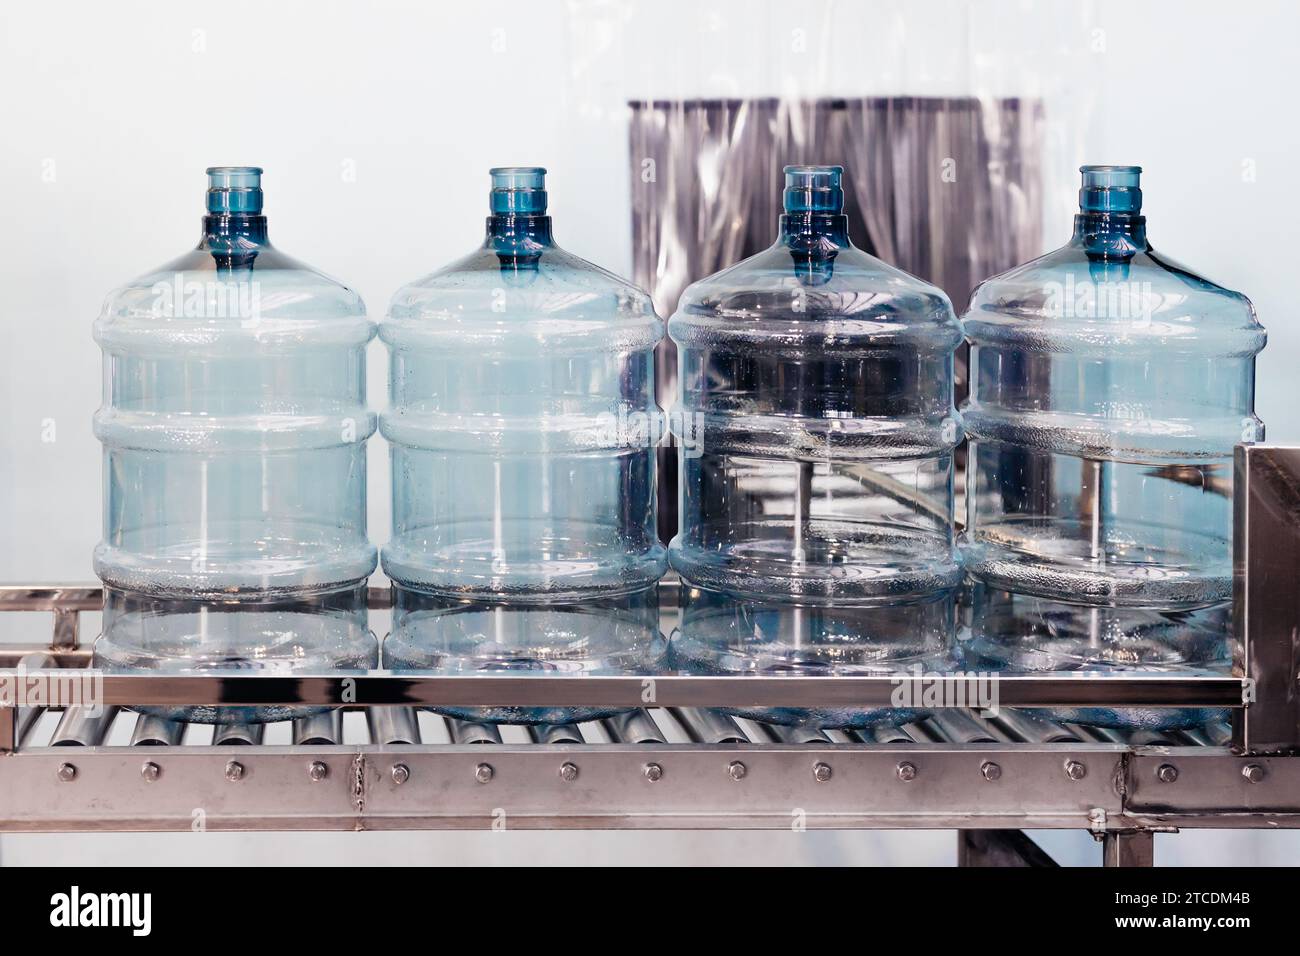 botellas limpias de agua potable se mueven automaticamente en rodillos transportadores para regar el embotellado en la fábrica de plantas de agua potable. Foto de stock